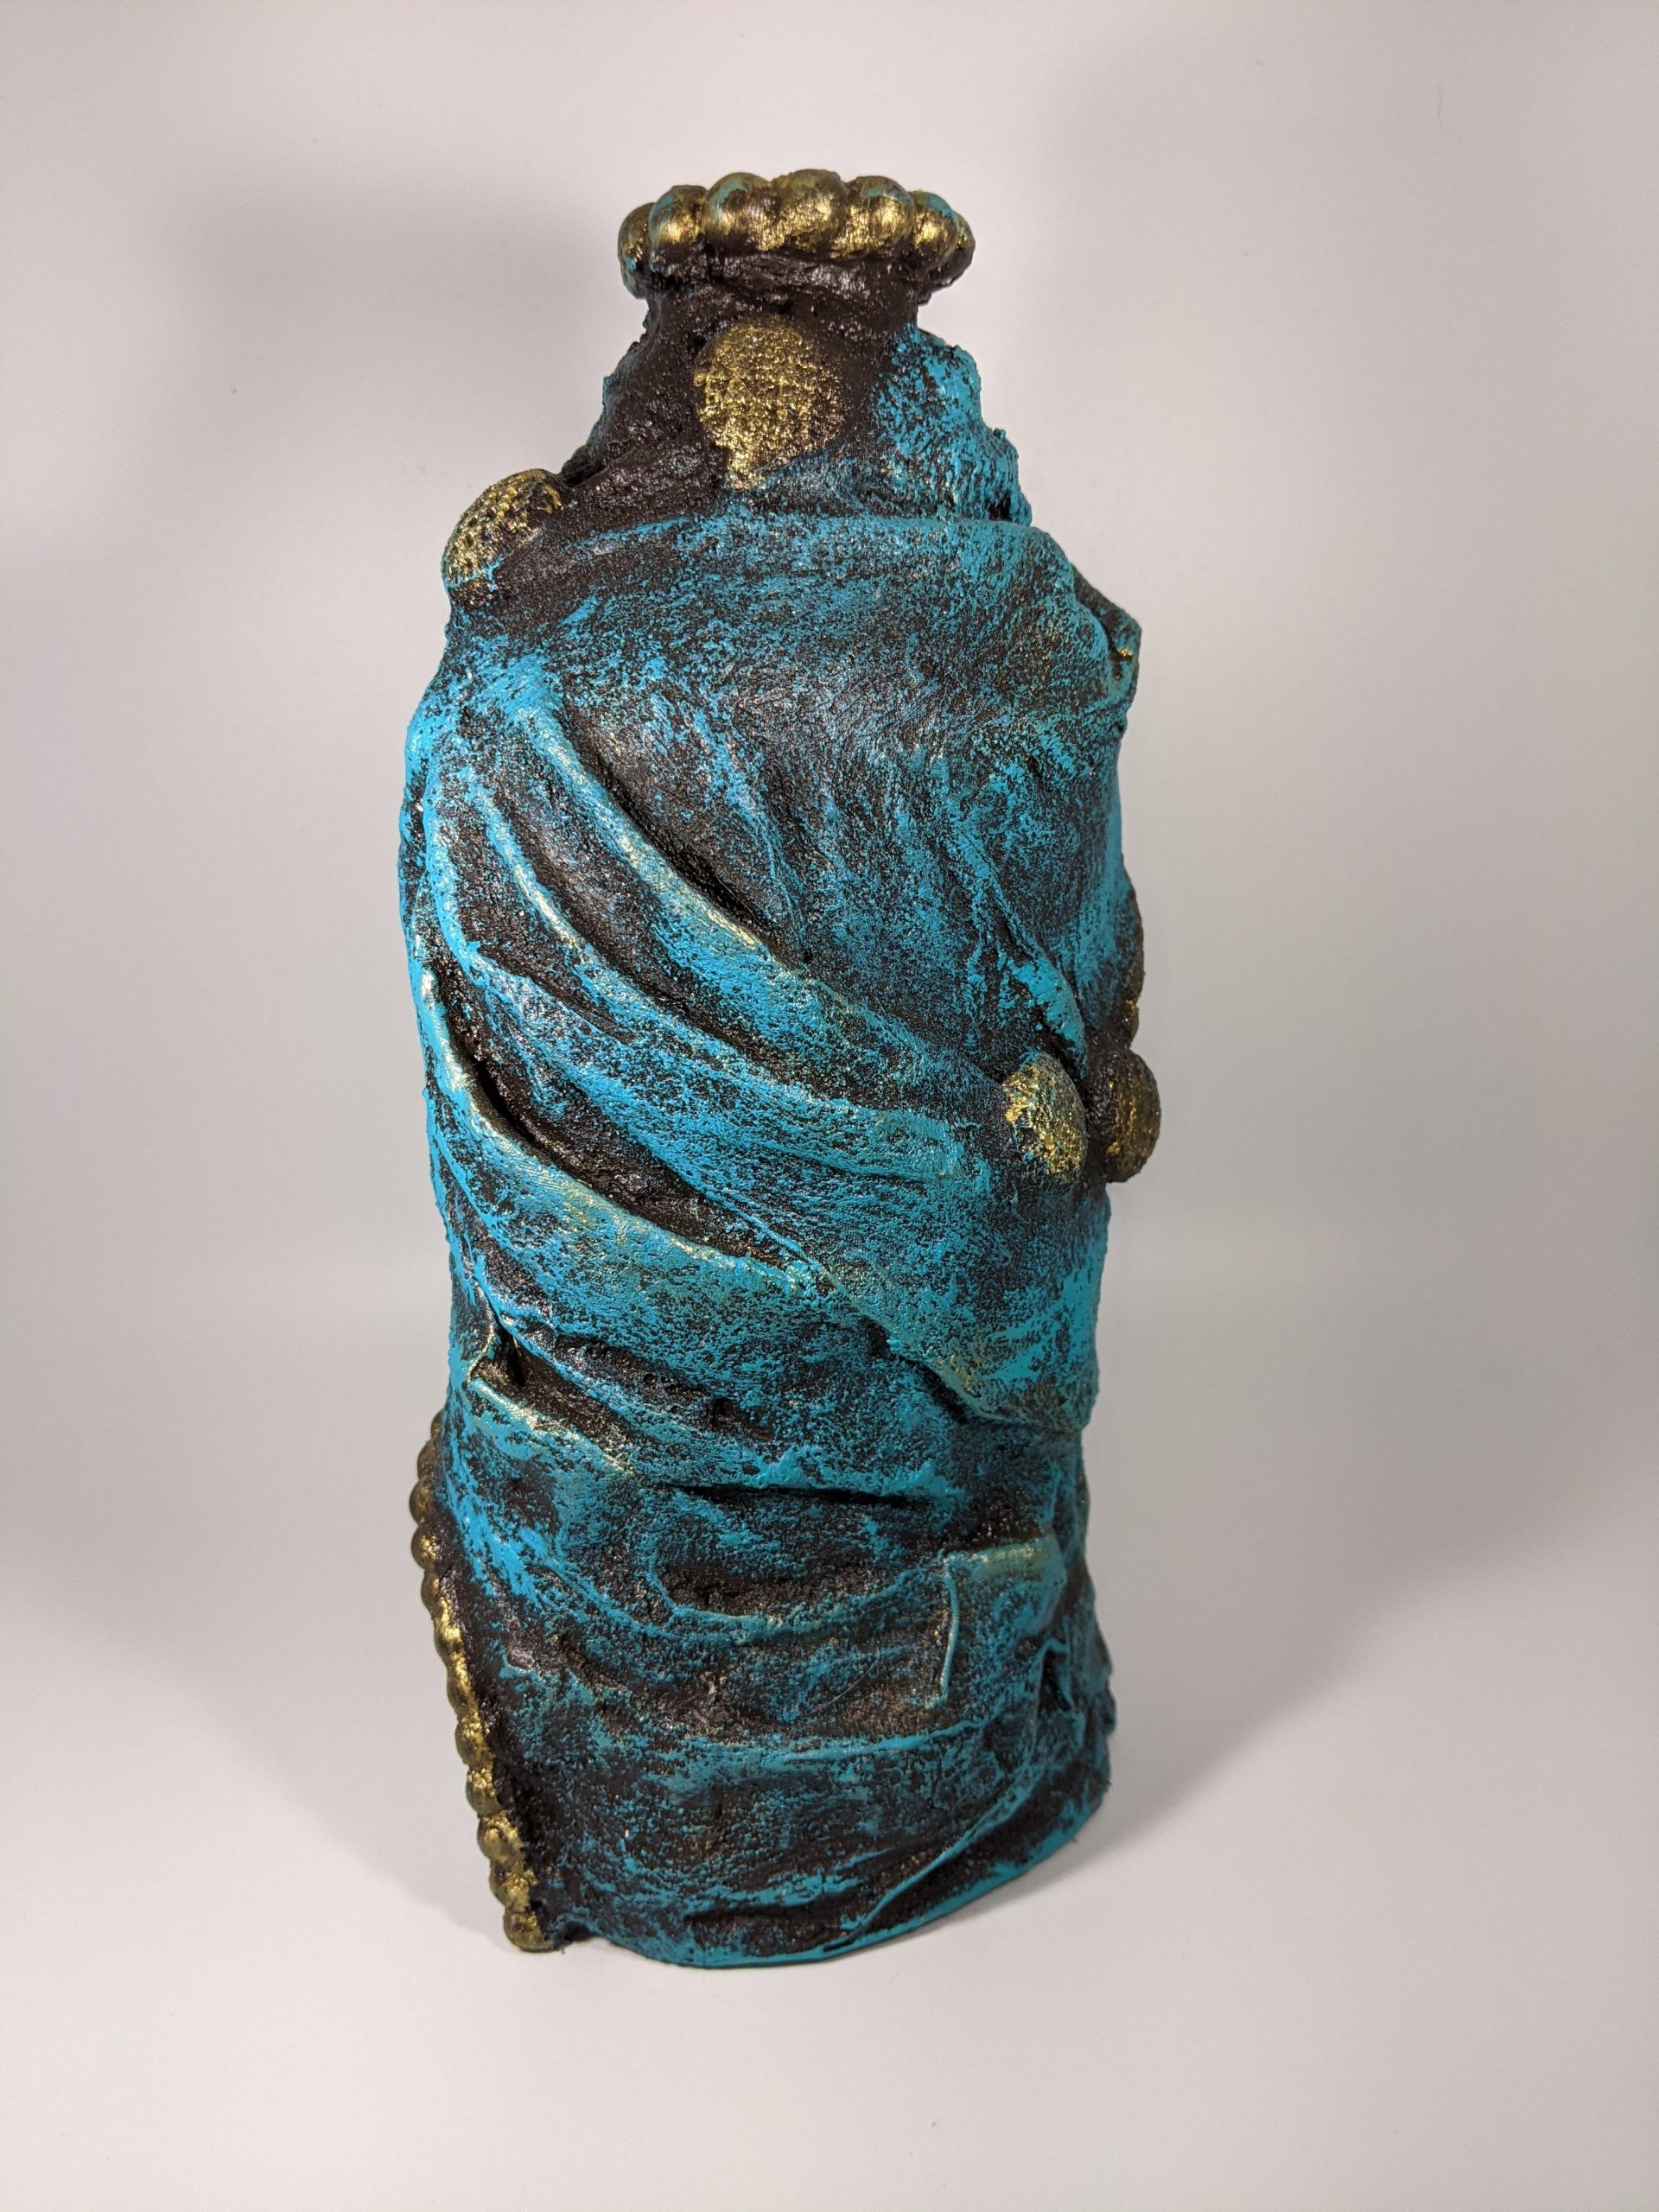 Elegant turquoise wrapped oval shaped bottle